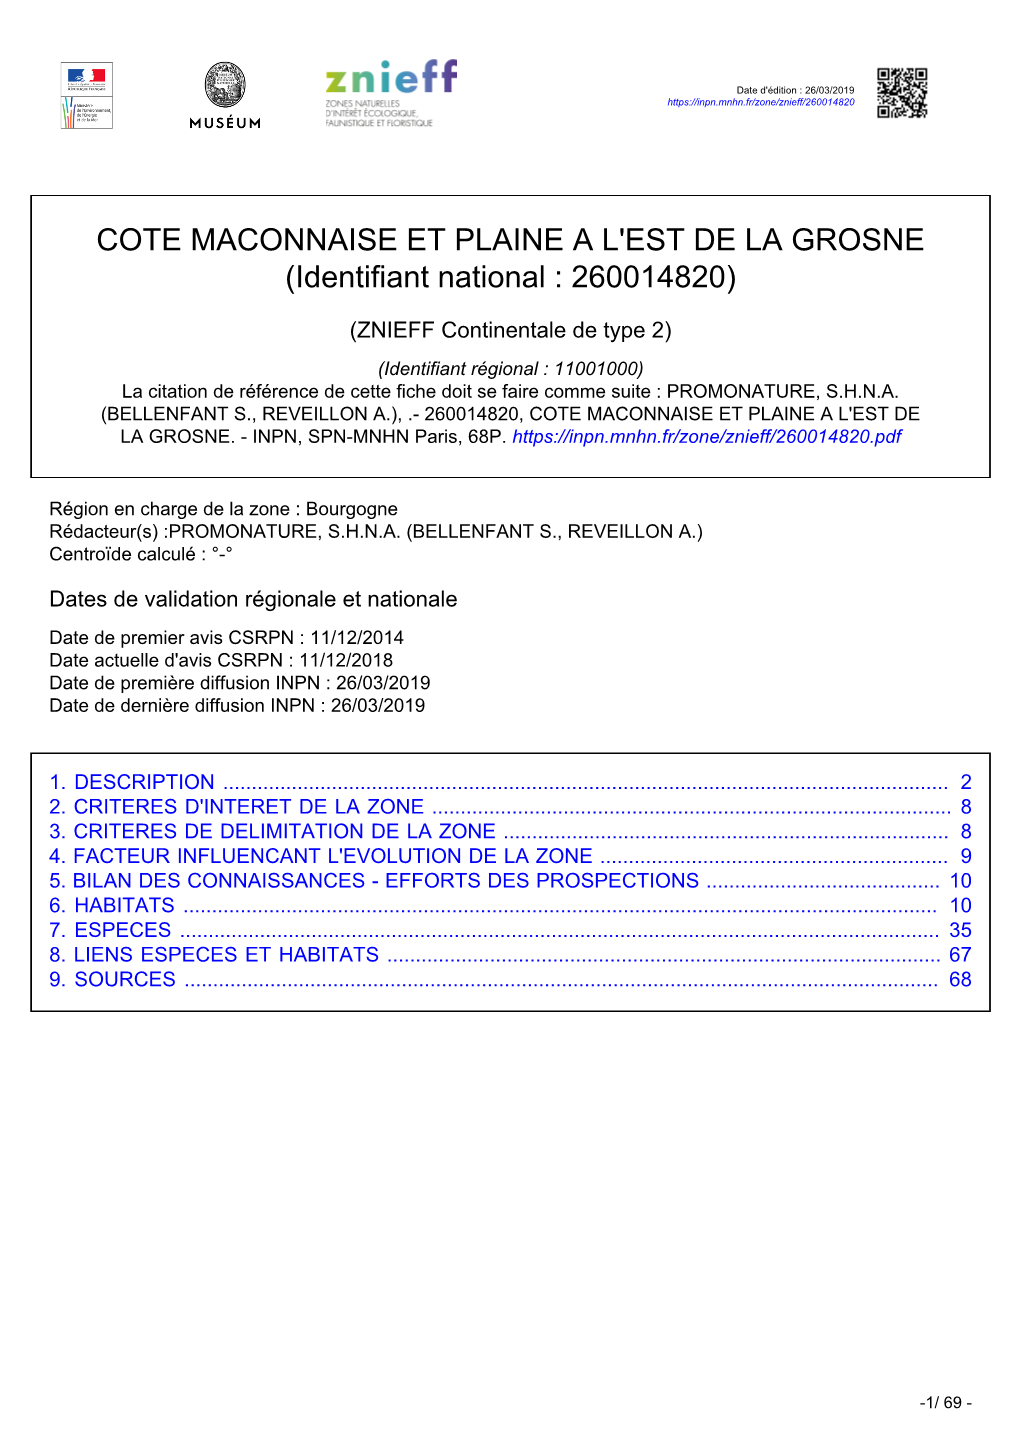 COTE MACONNAISE ET PLAINE a L'est DE LA GROSNE (Identifiant National : 260014820)